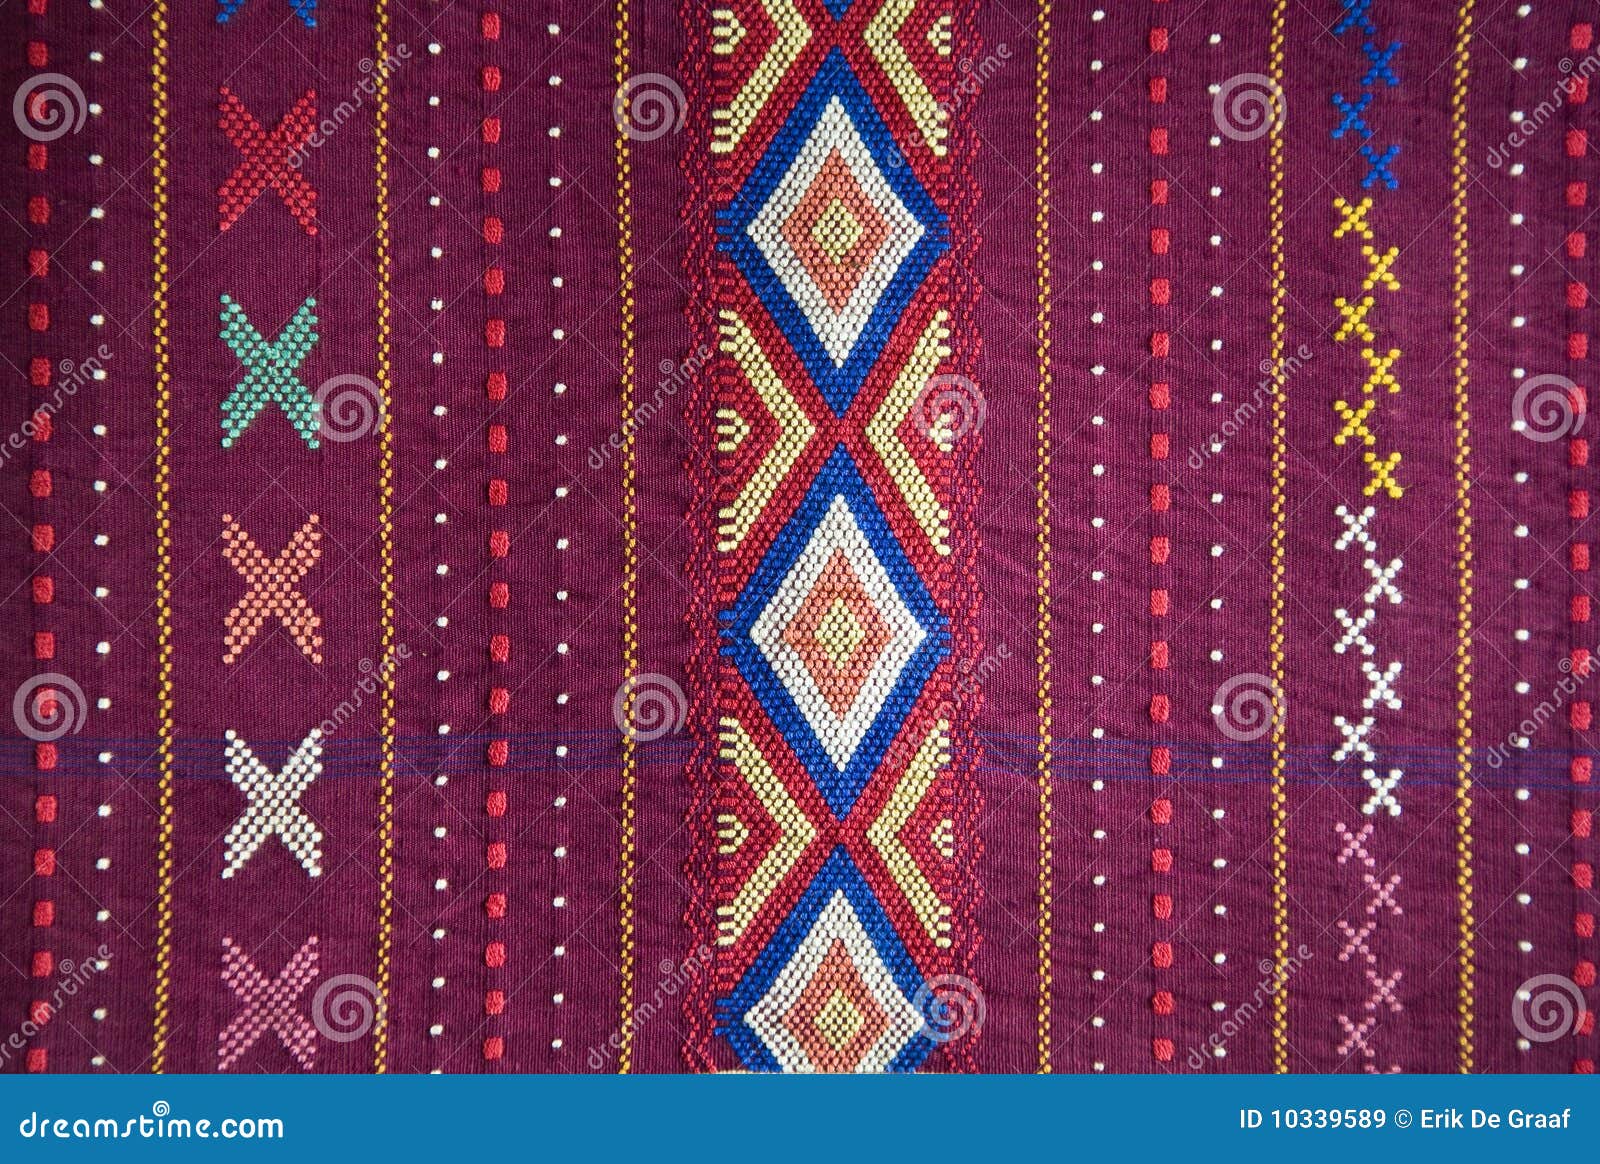  Ulos  background  stock image Image of culture sumatra 